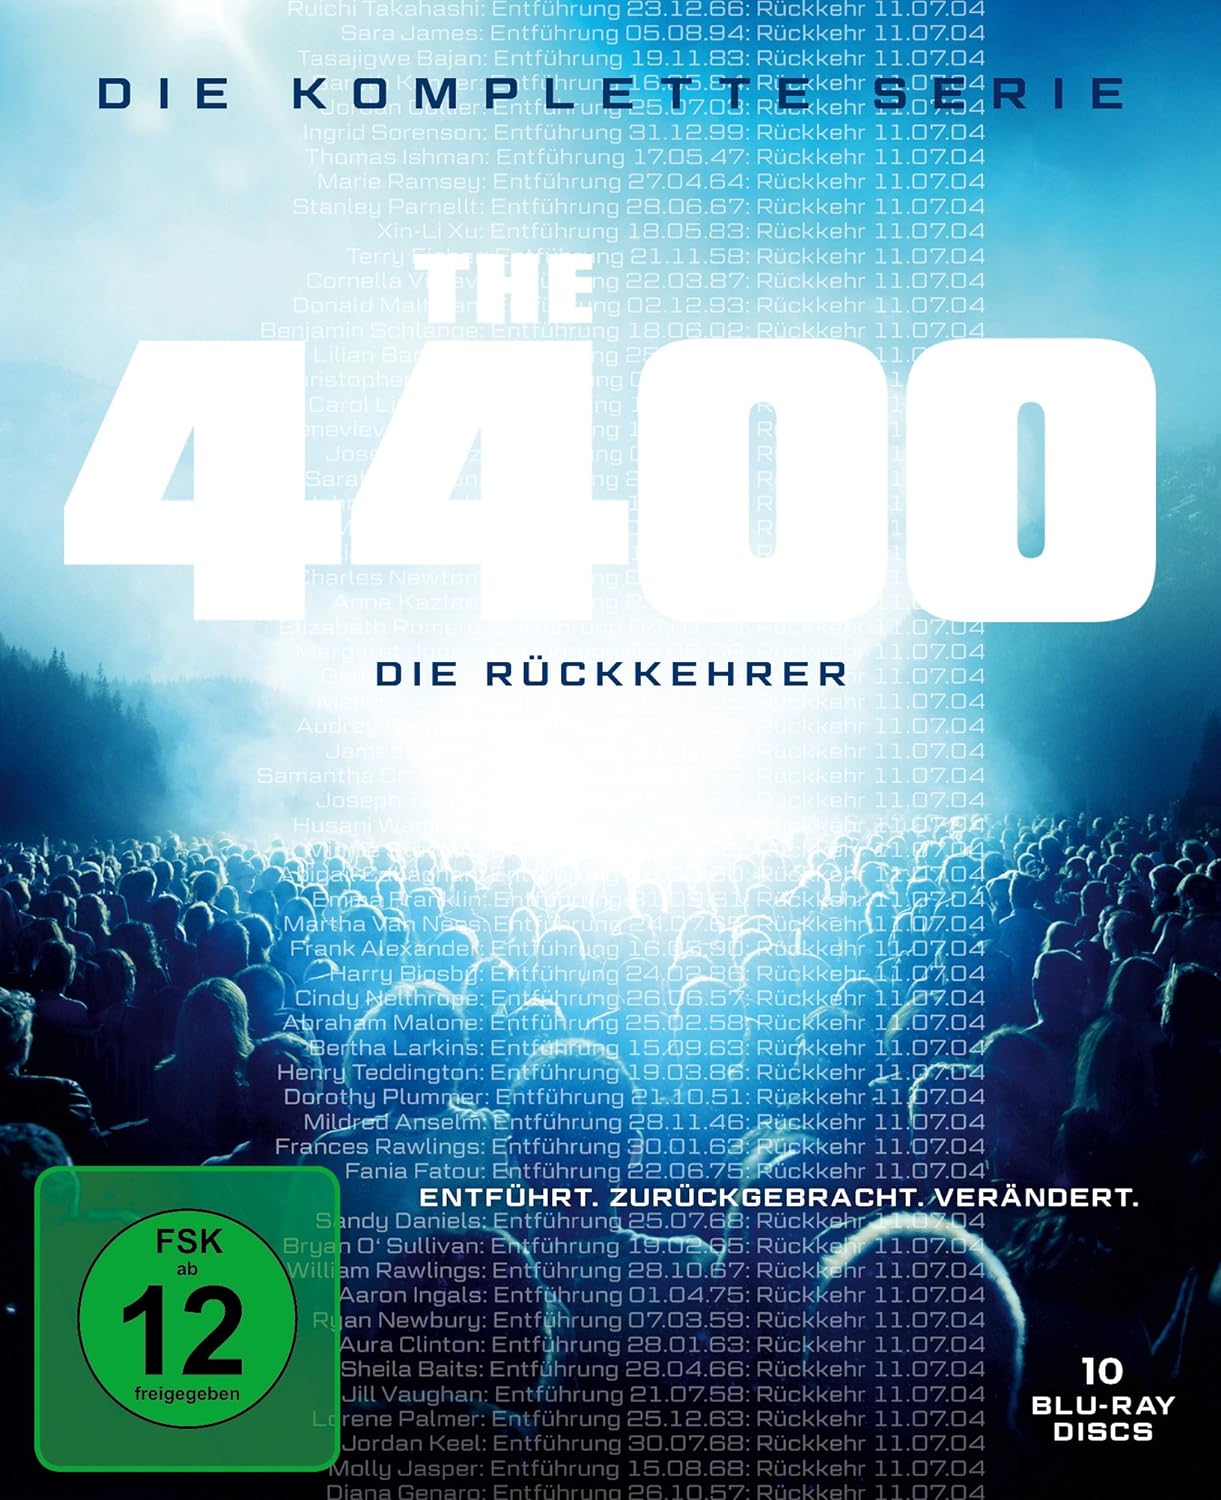 4400 - Die Rückkehrer - Die komplette Serie